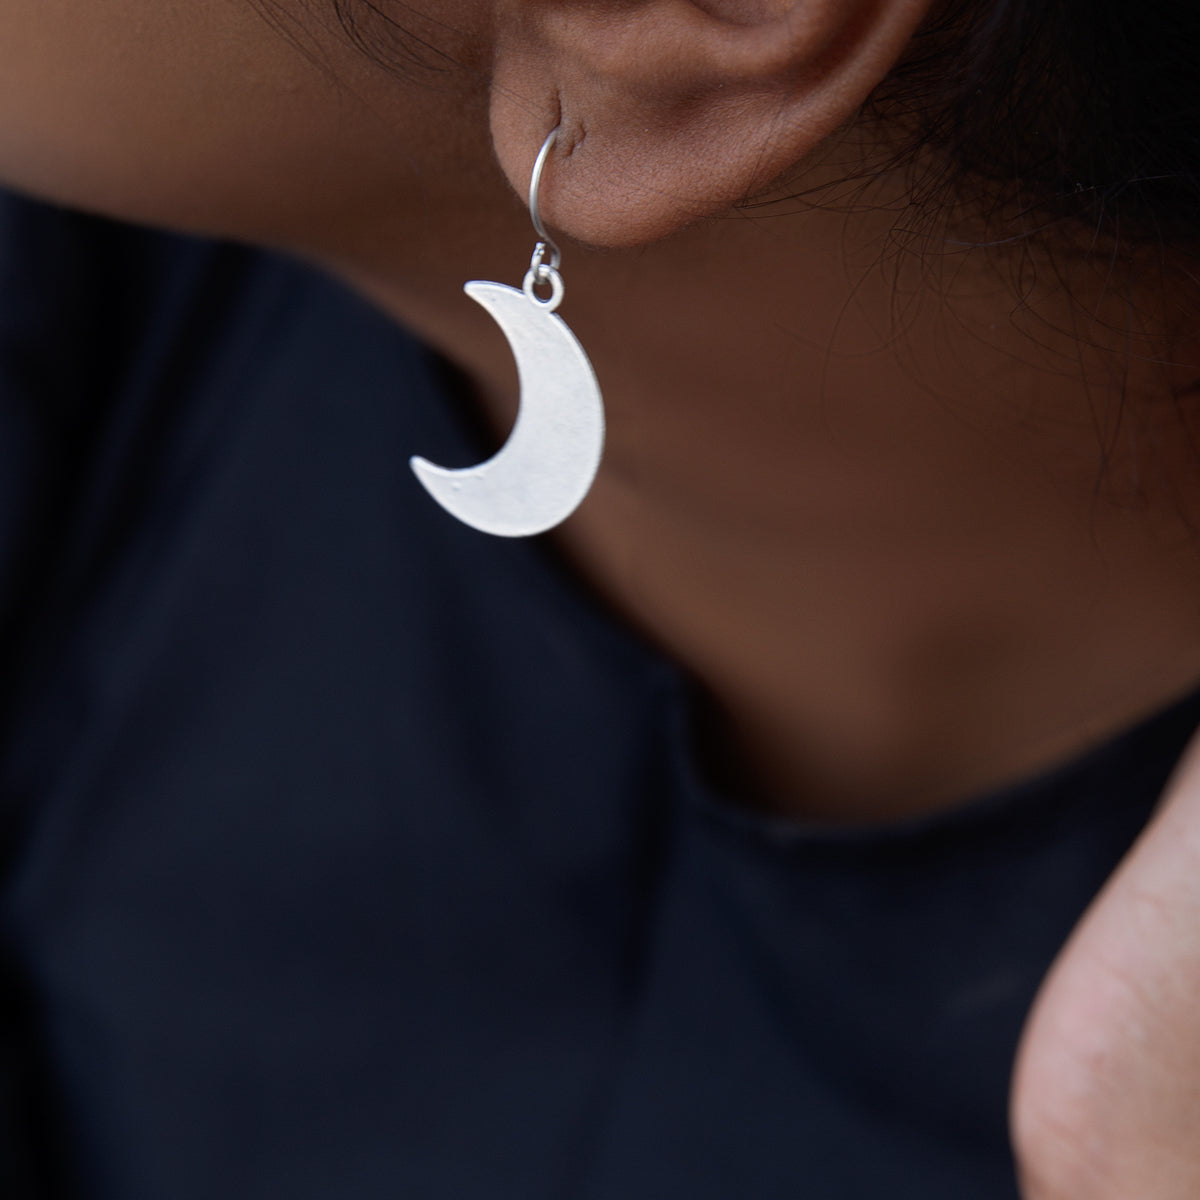 Medium Crescent Moon Hoop Earrings | Ear jewelry, Cute jewelry, Jewelry  accessories